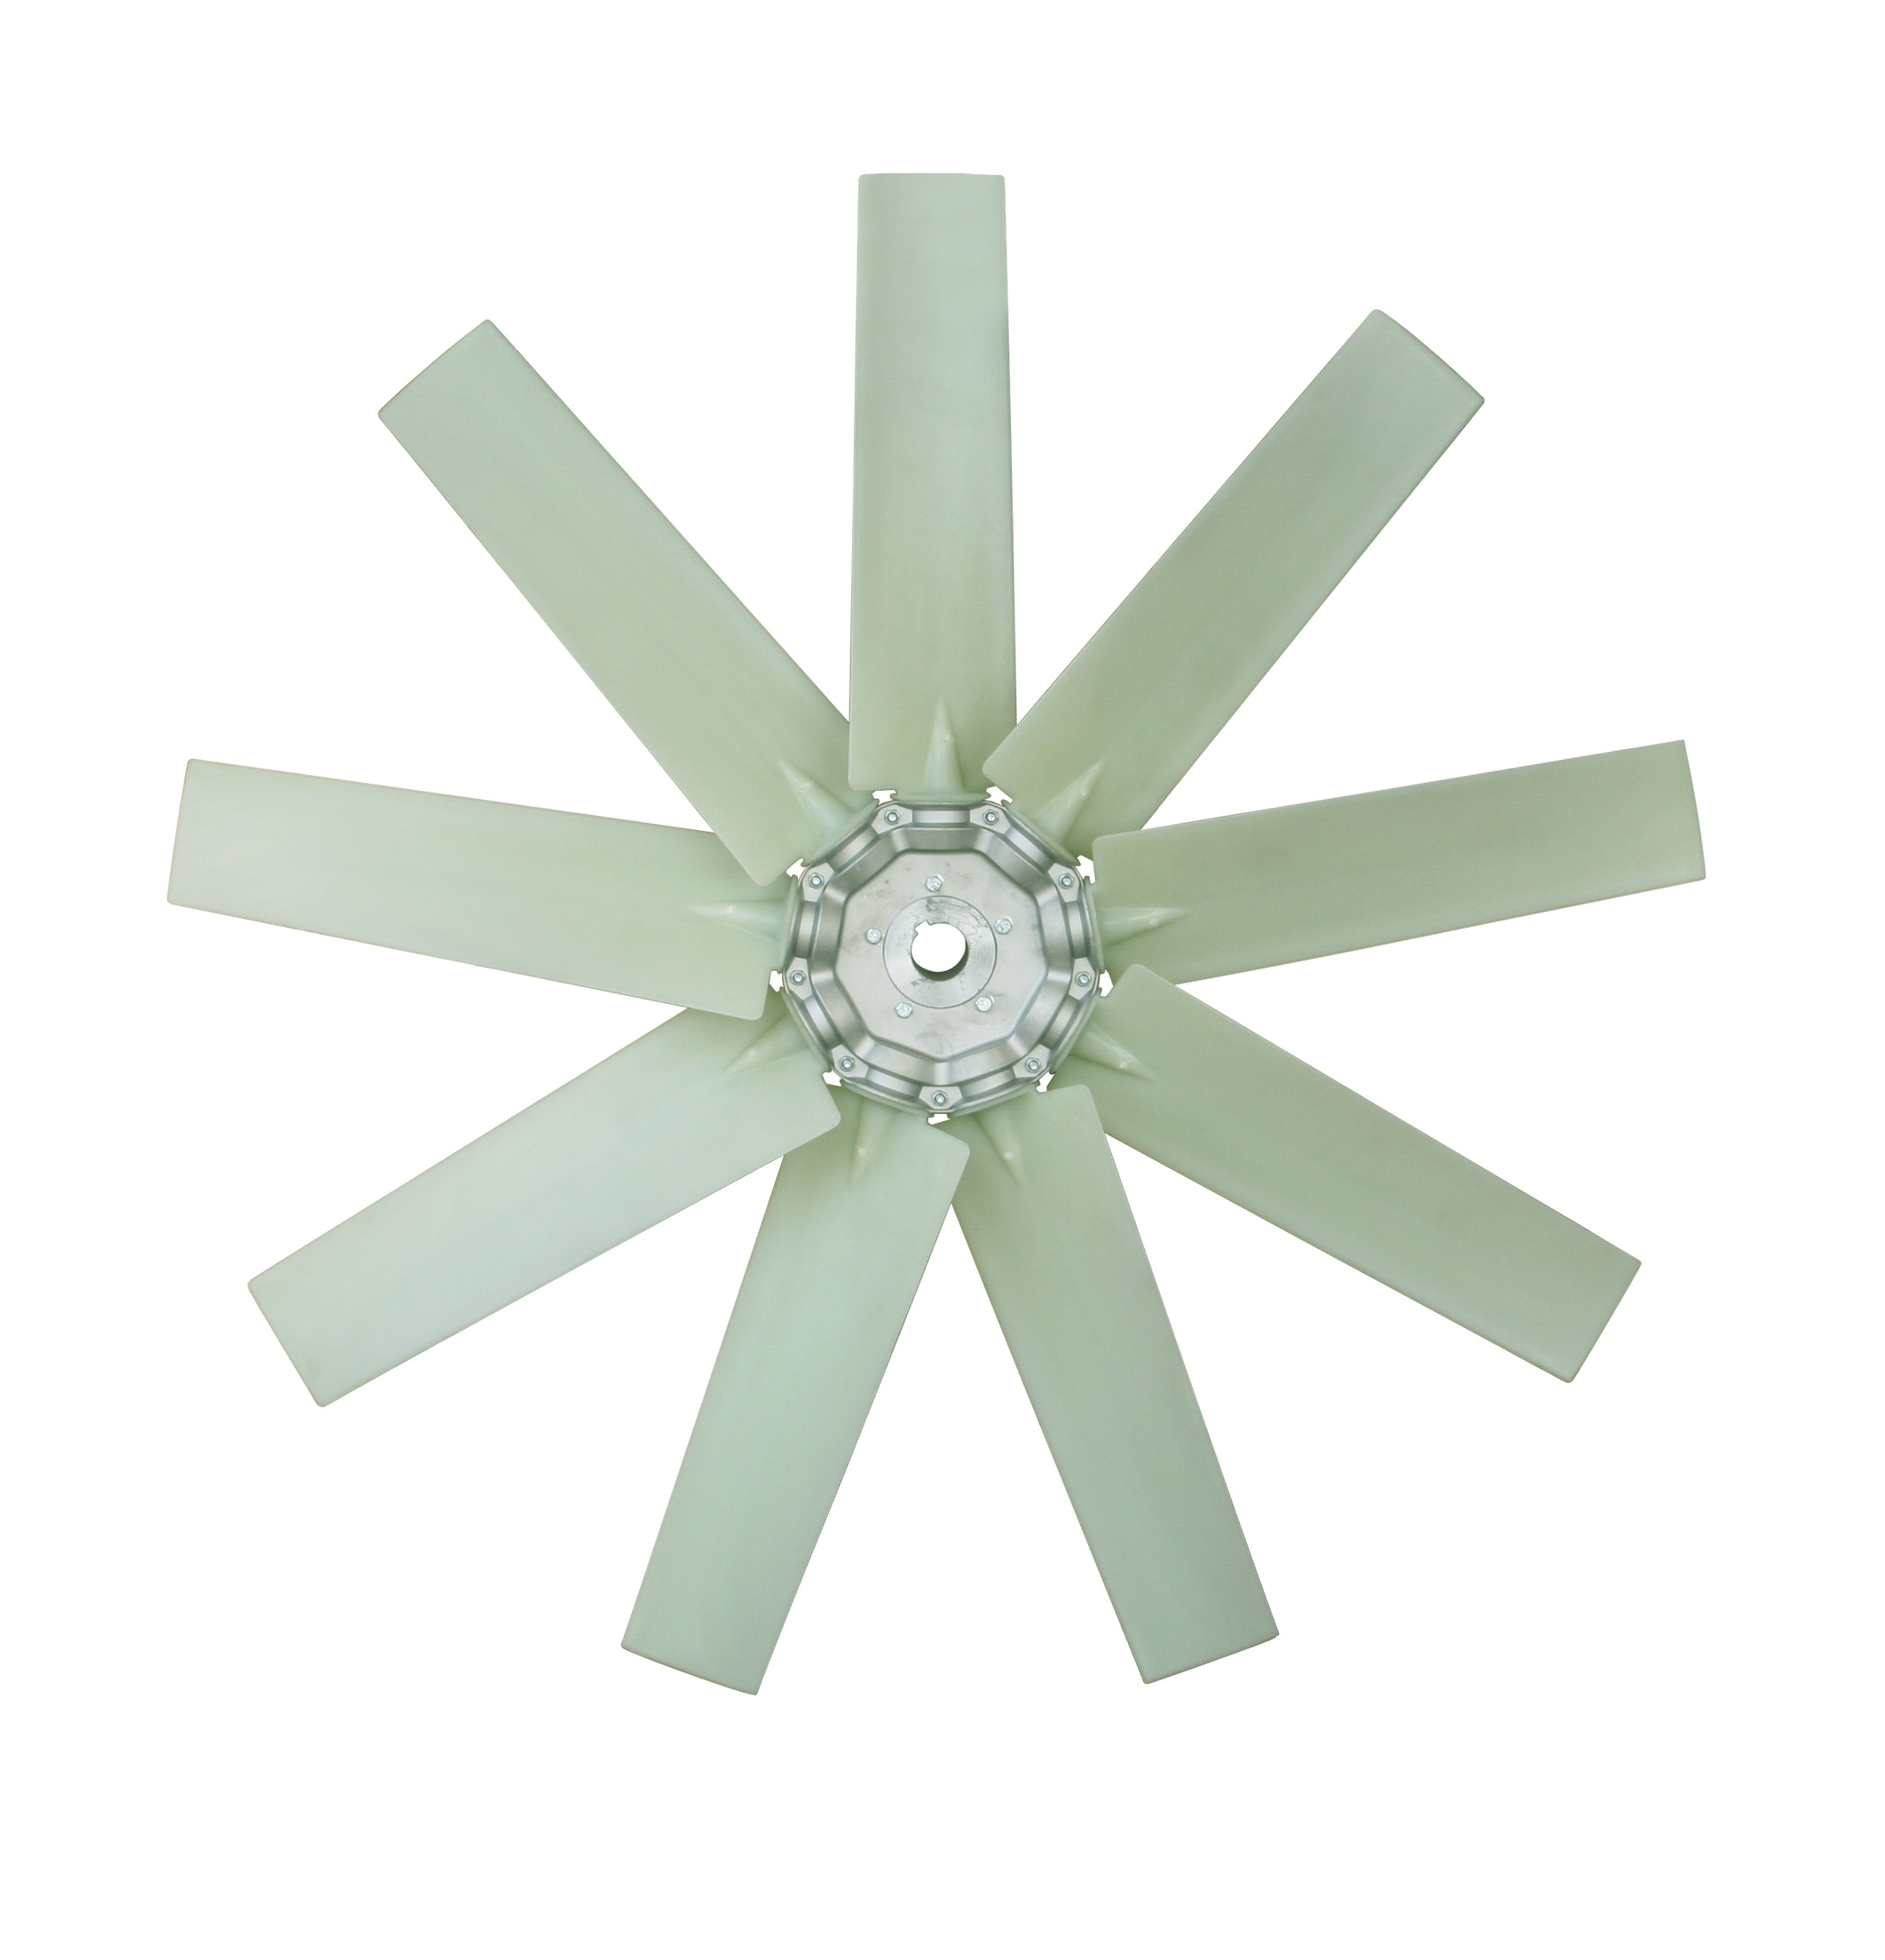 plastic fan blades for industrial axial ventilation fan